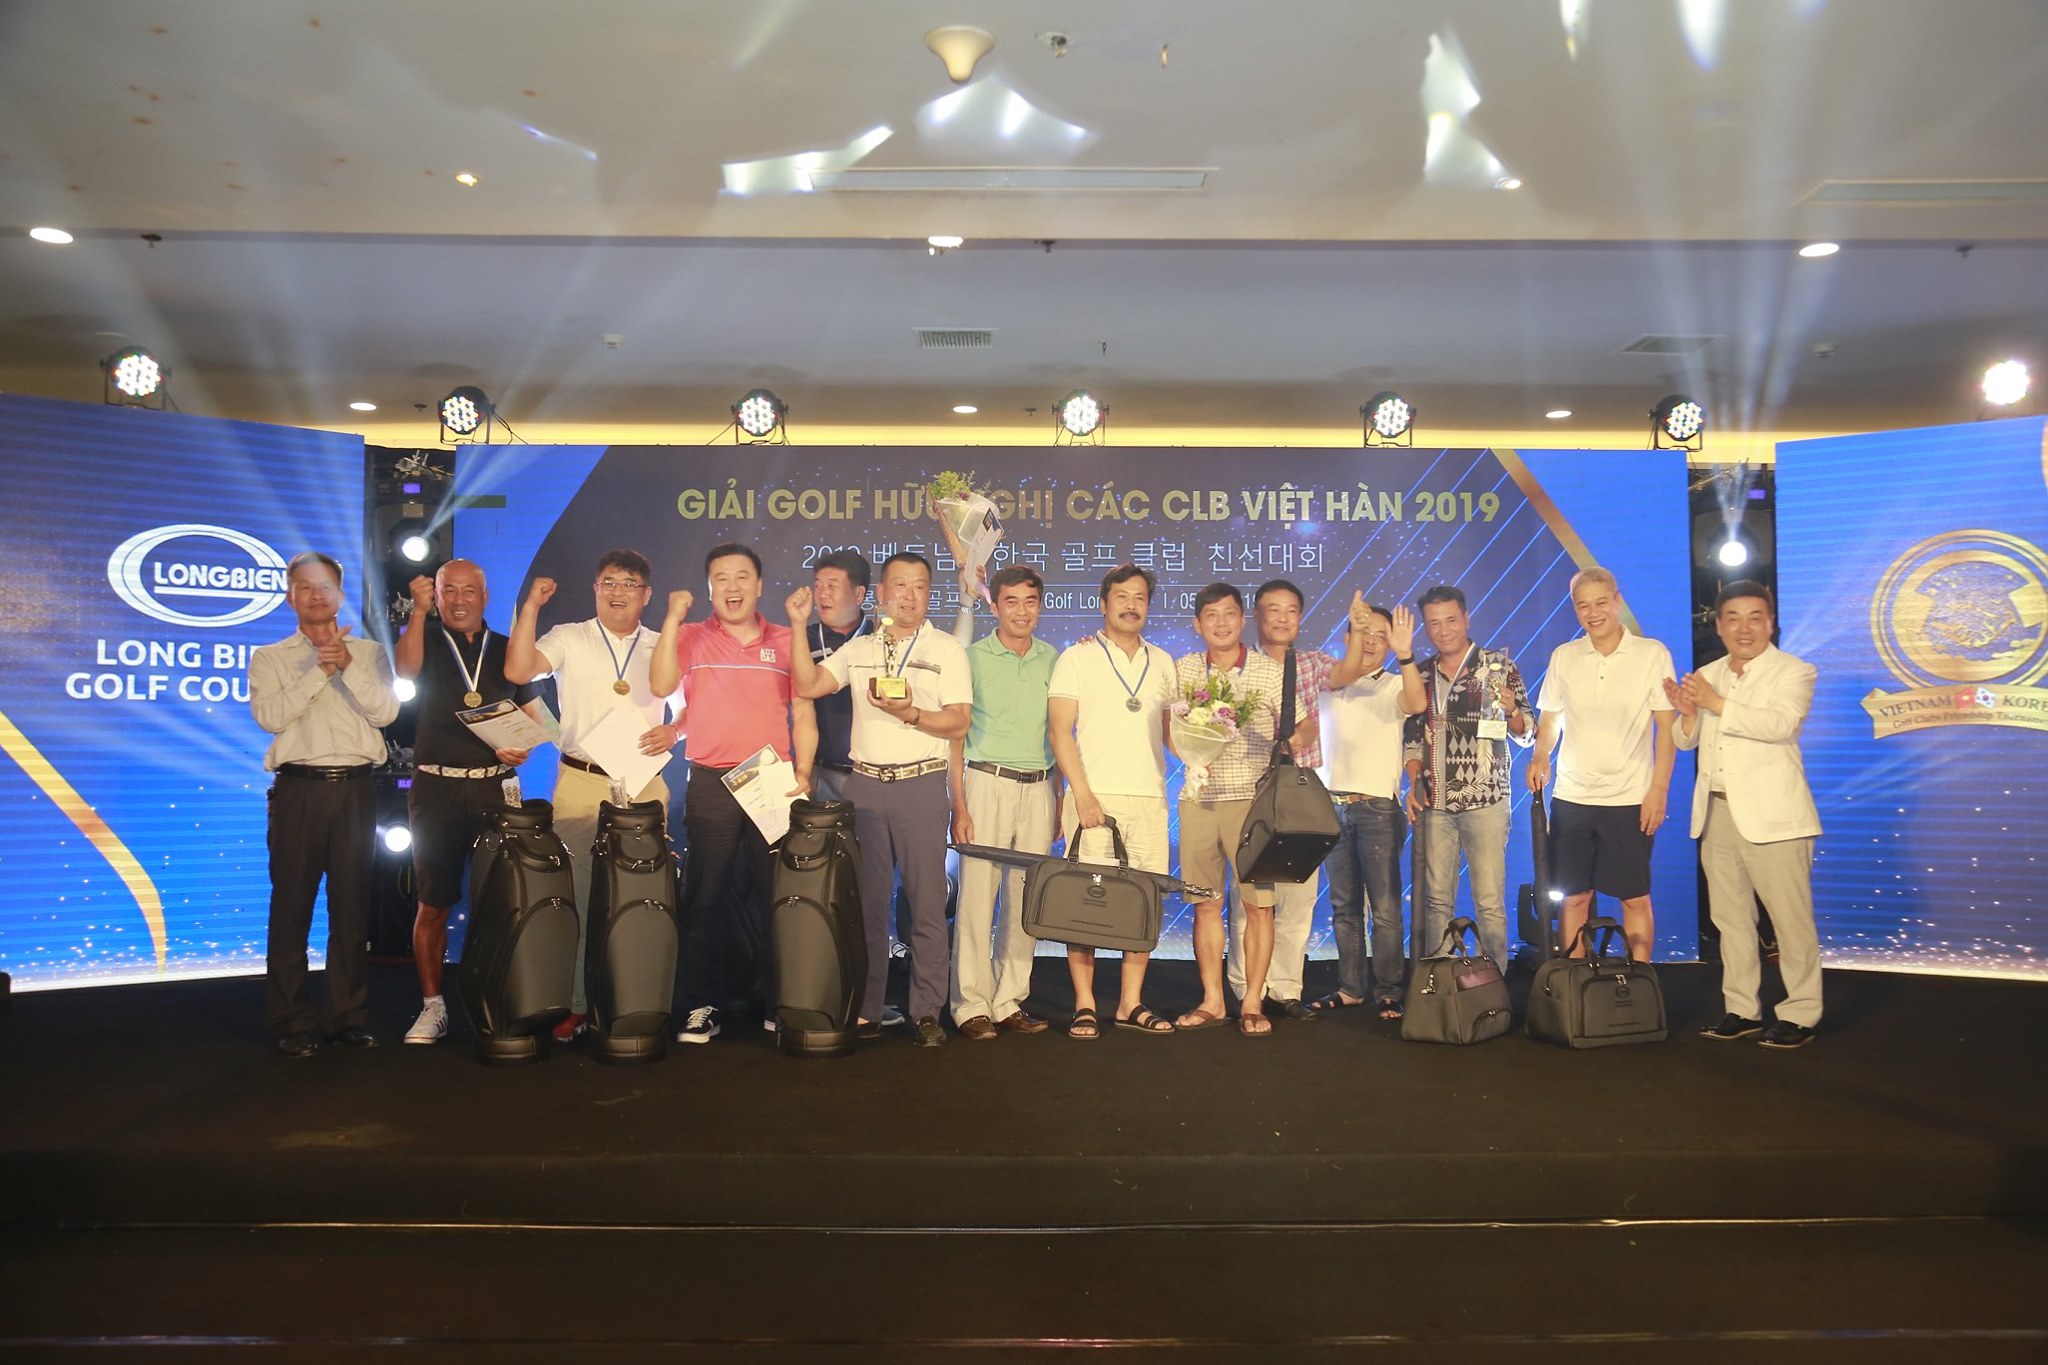 Đội Hamaeum Golf Club giành cúp vô địch tại Giải golf Hữu nghị các CLB Việt Hàn 2019